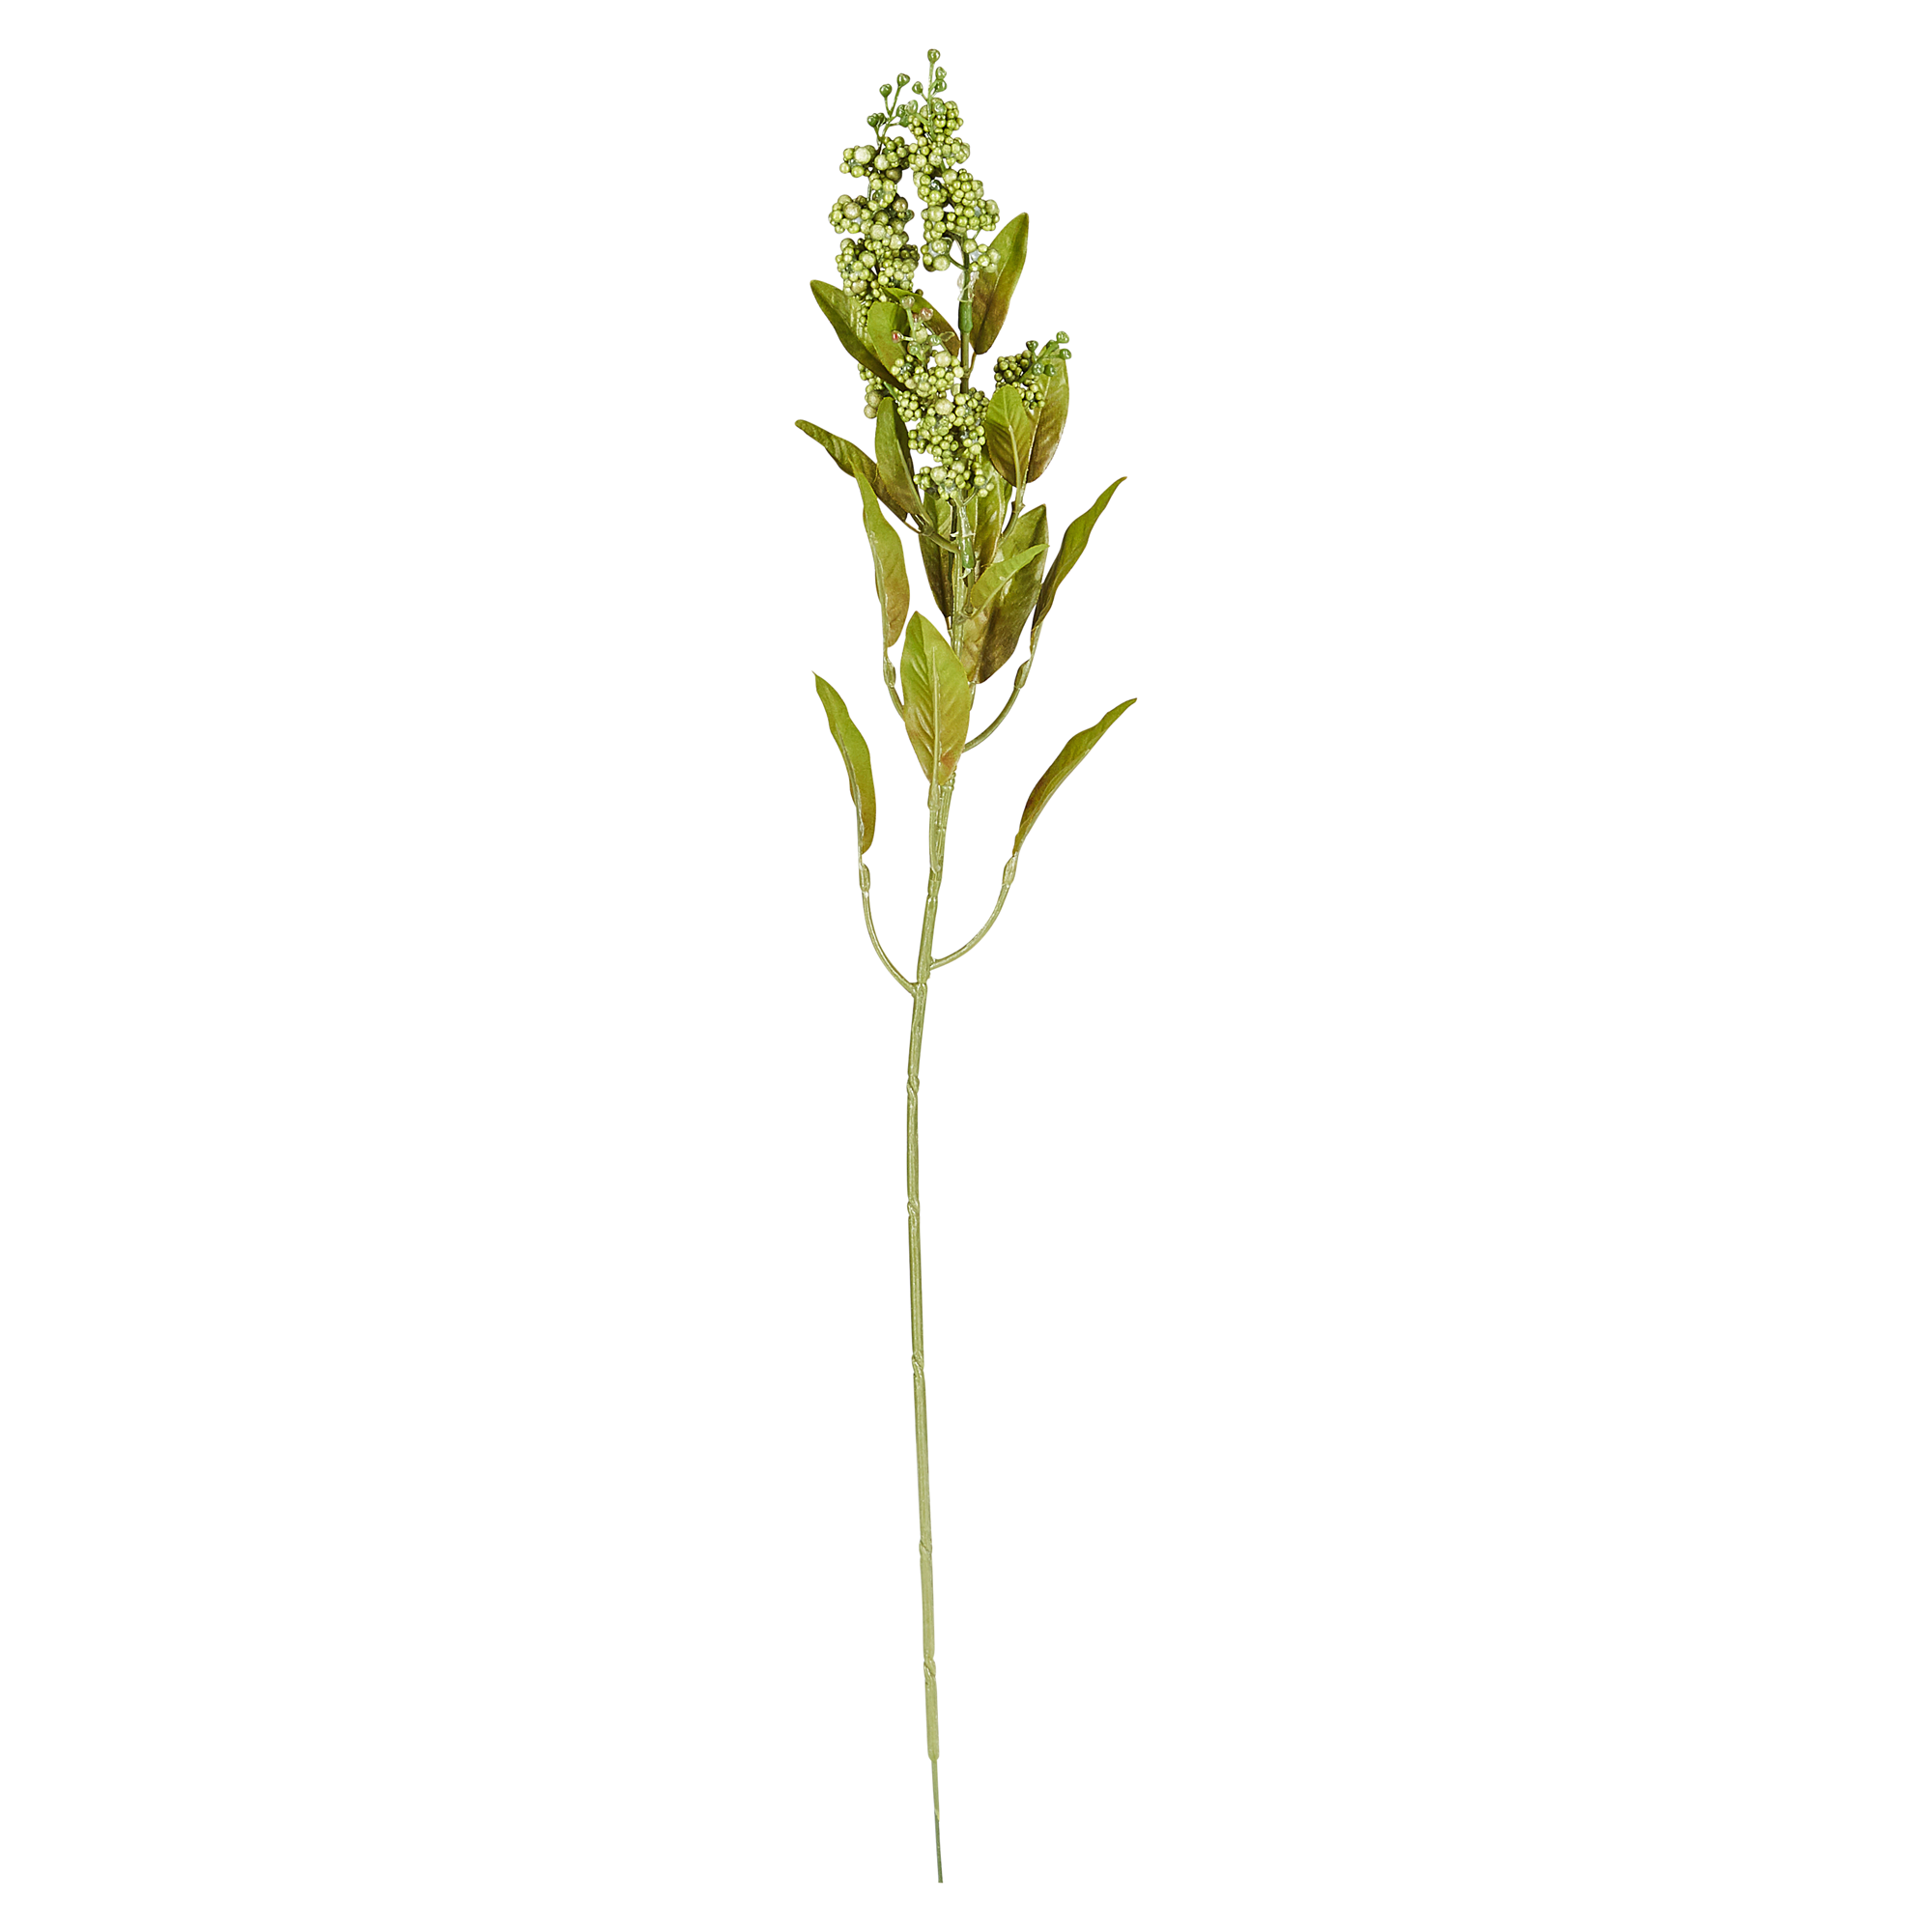 Beerenzweig Aloe vera gestielt 59 cm + product picture